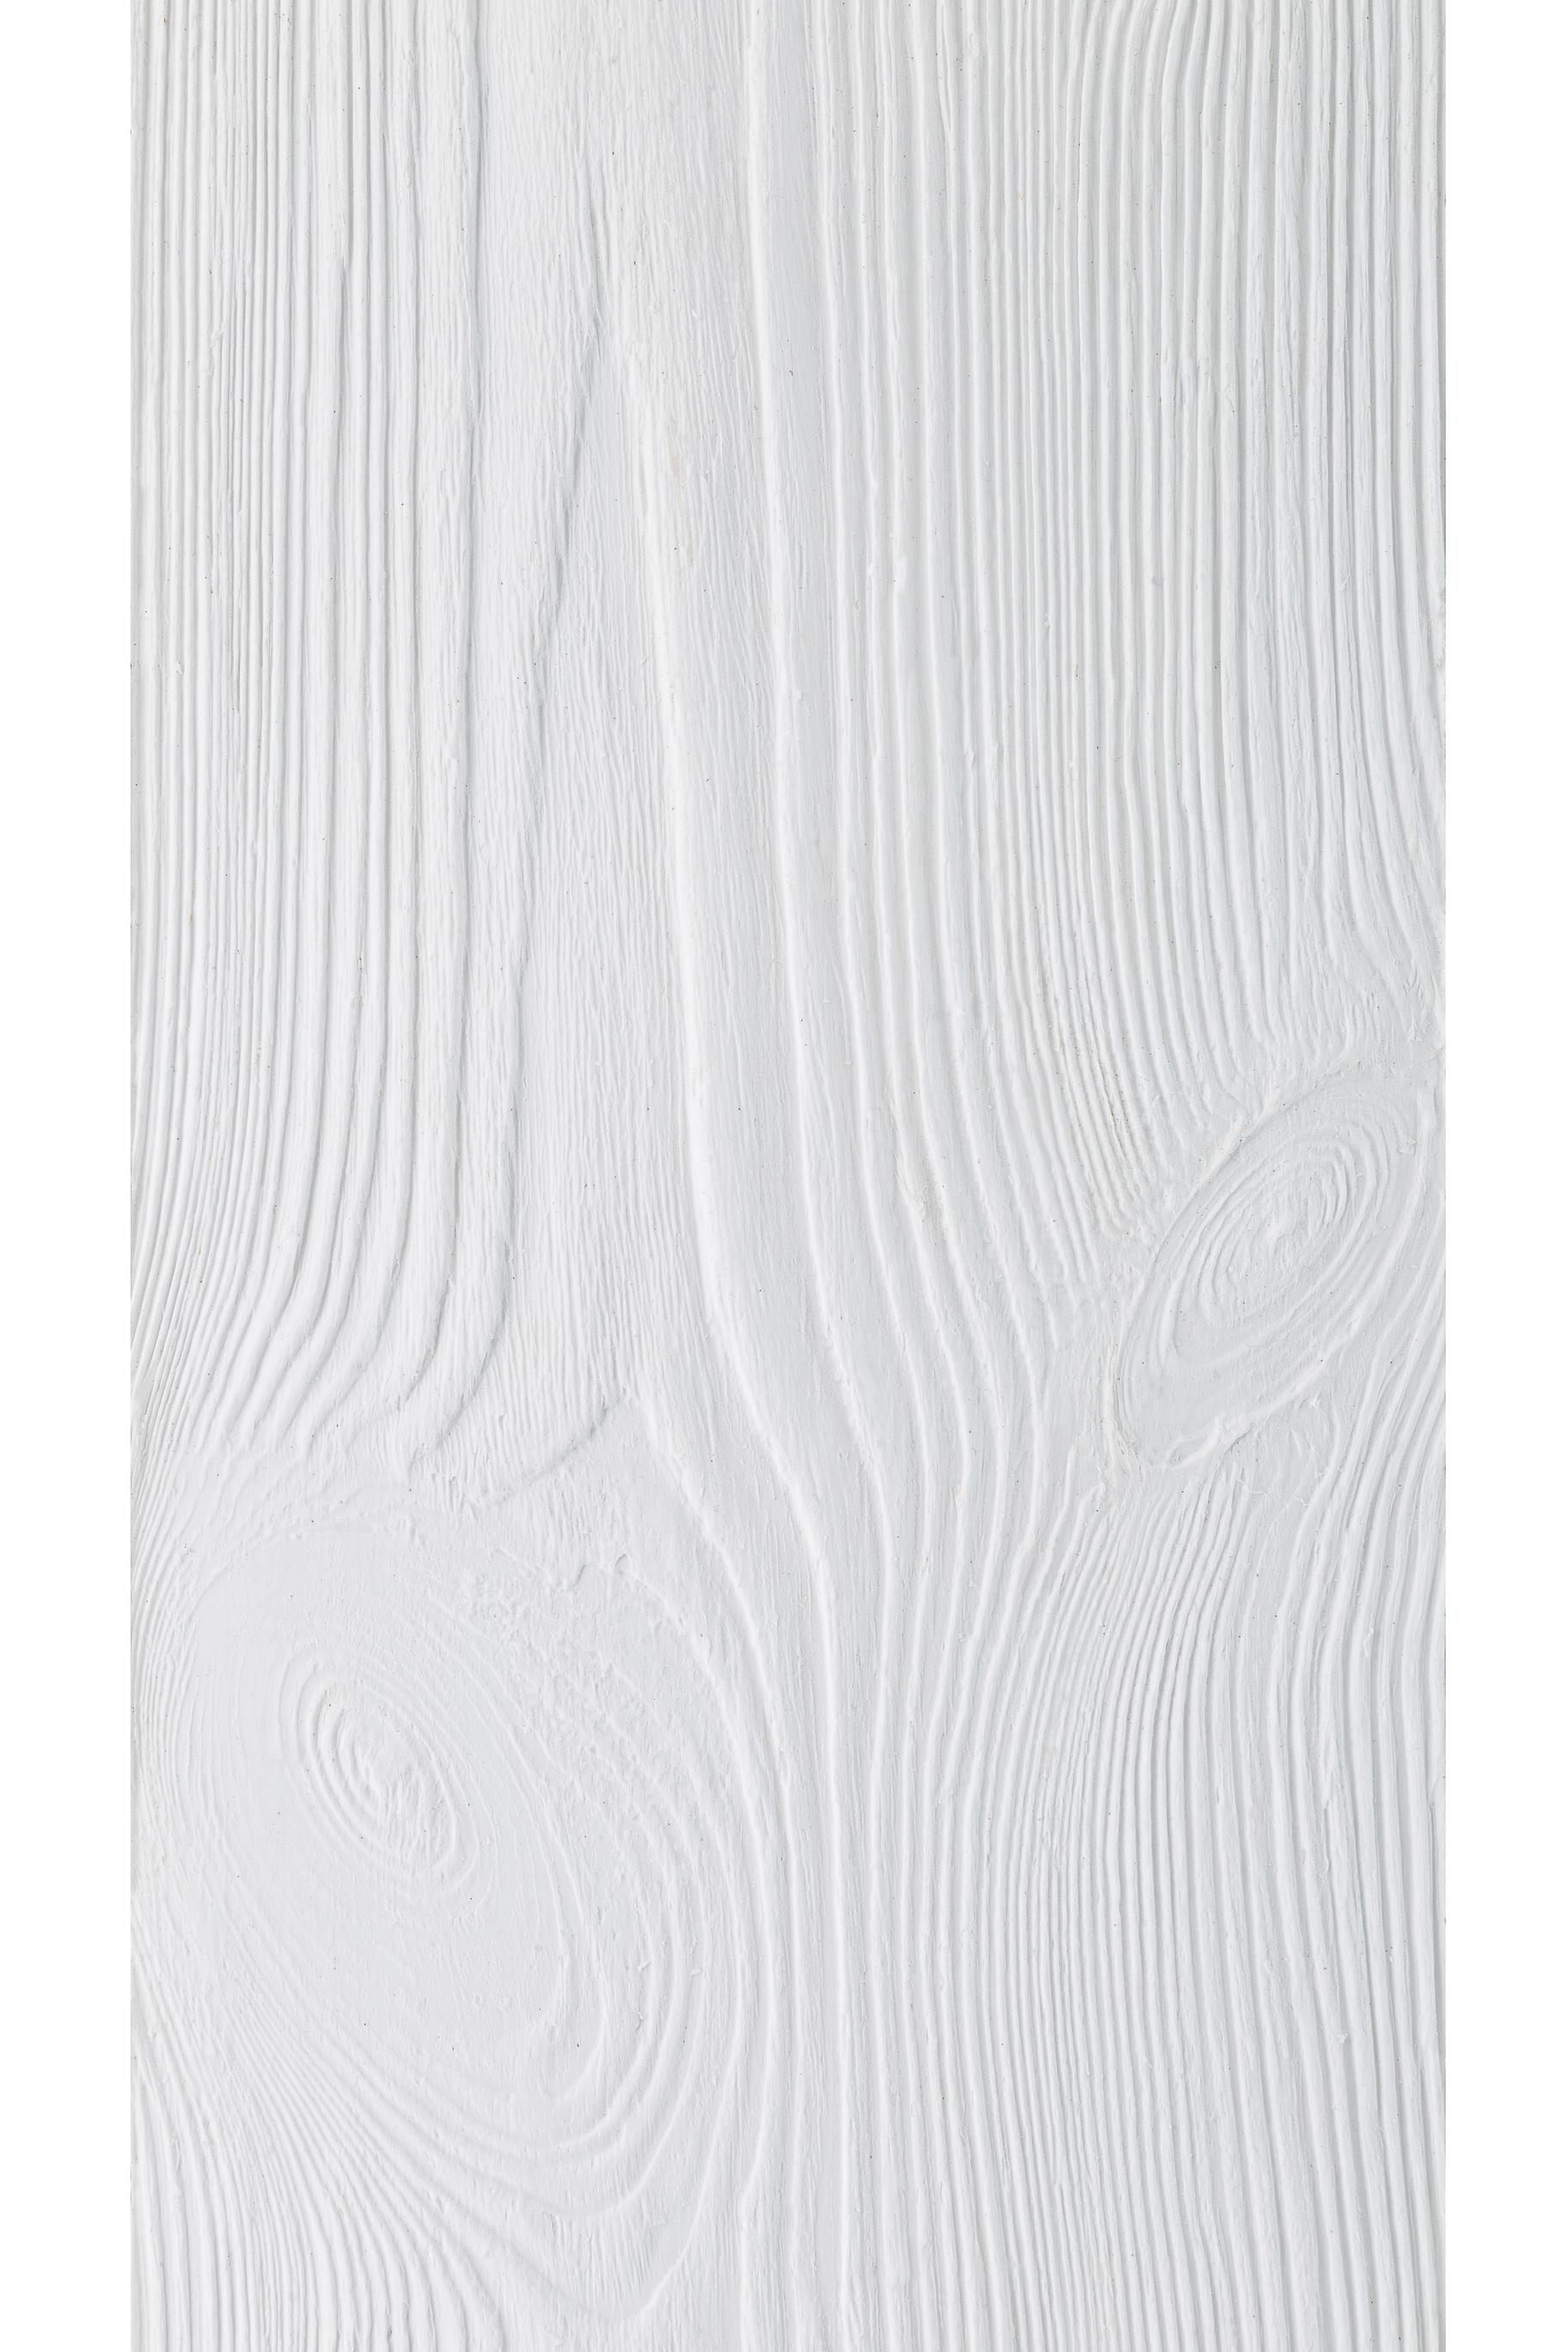 Матриця силіконова Relief-decor W6 дерево 225x500 мм